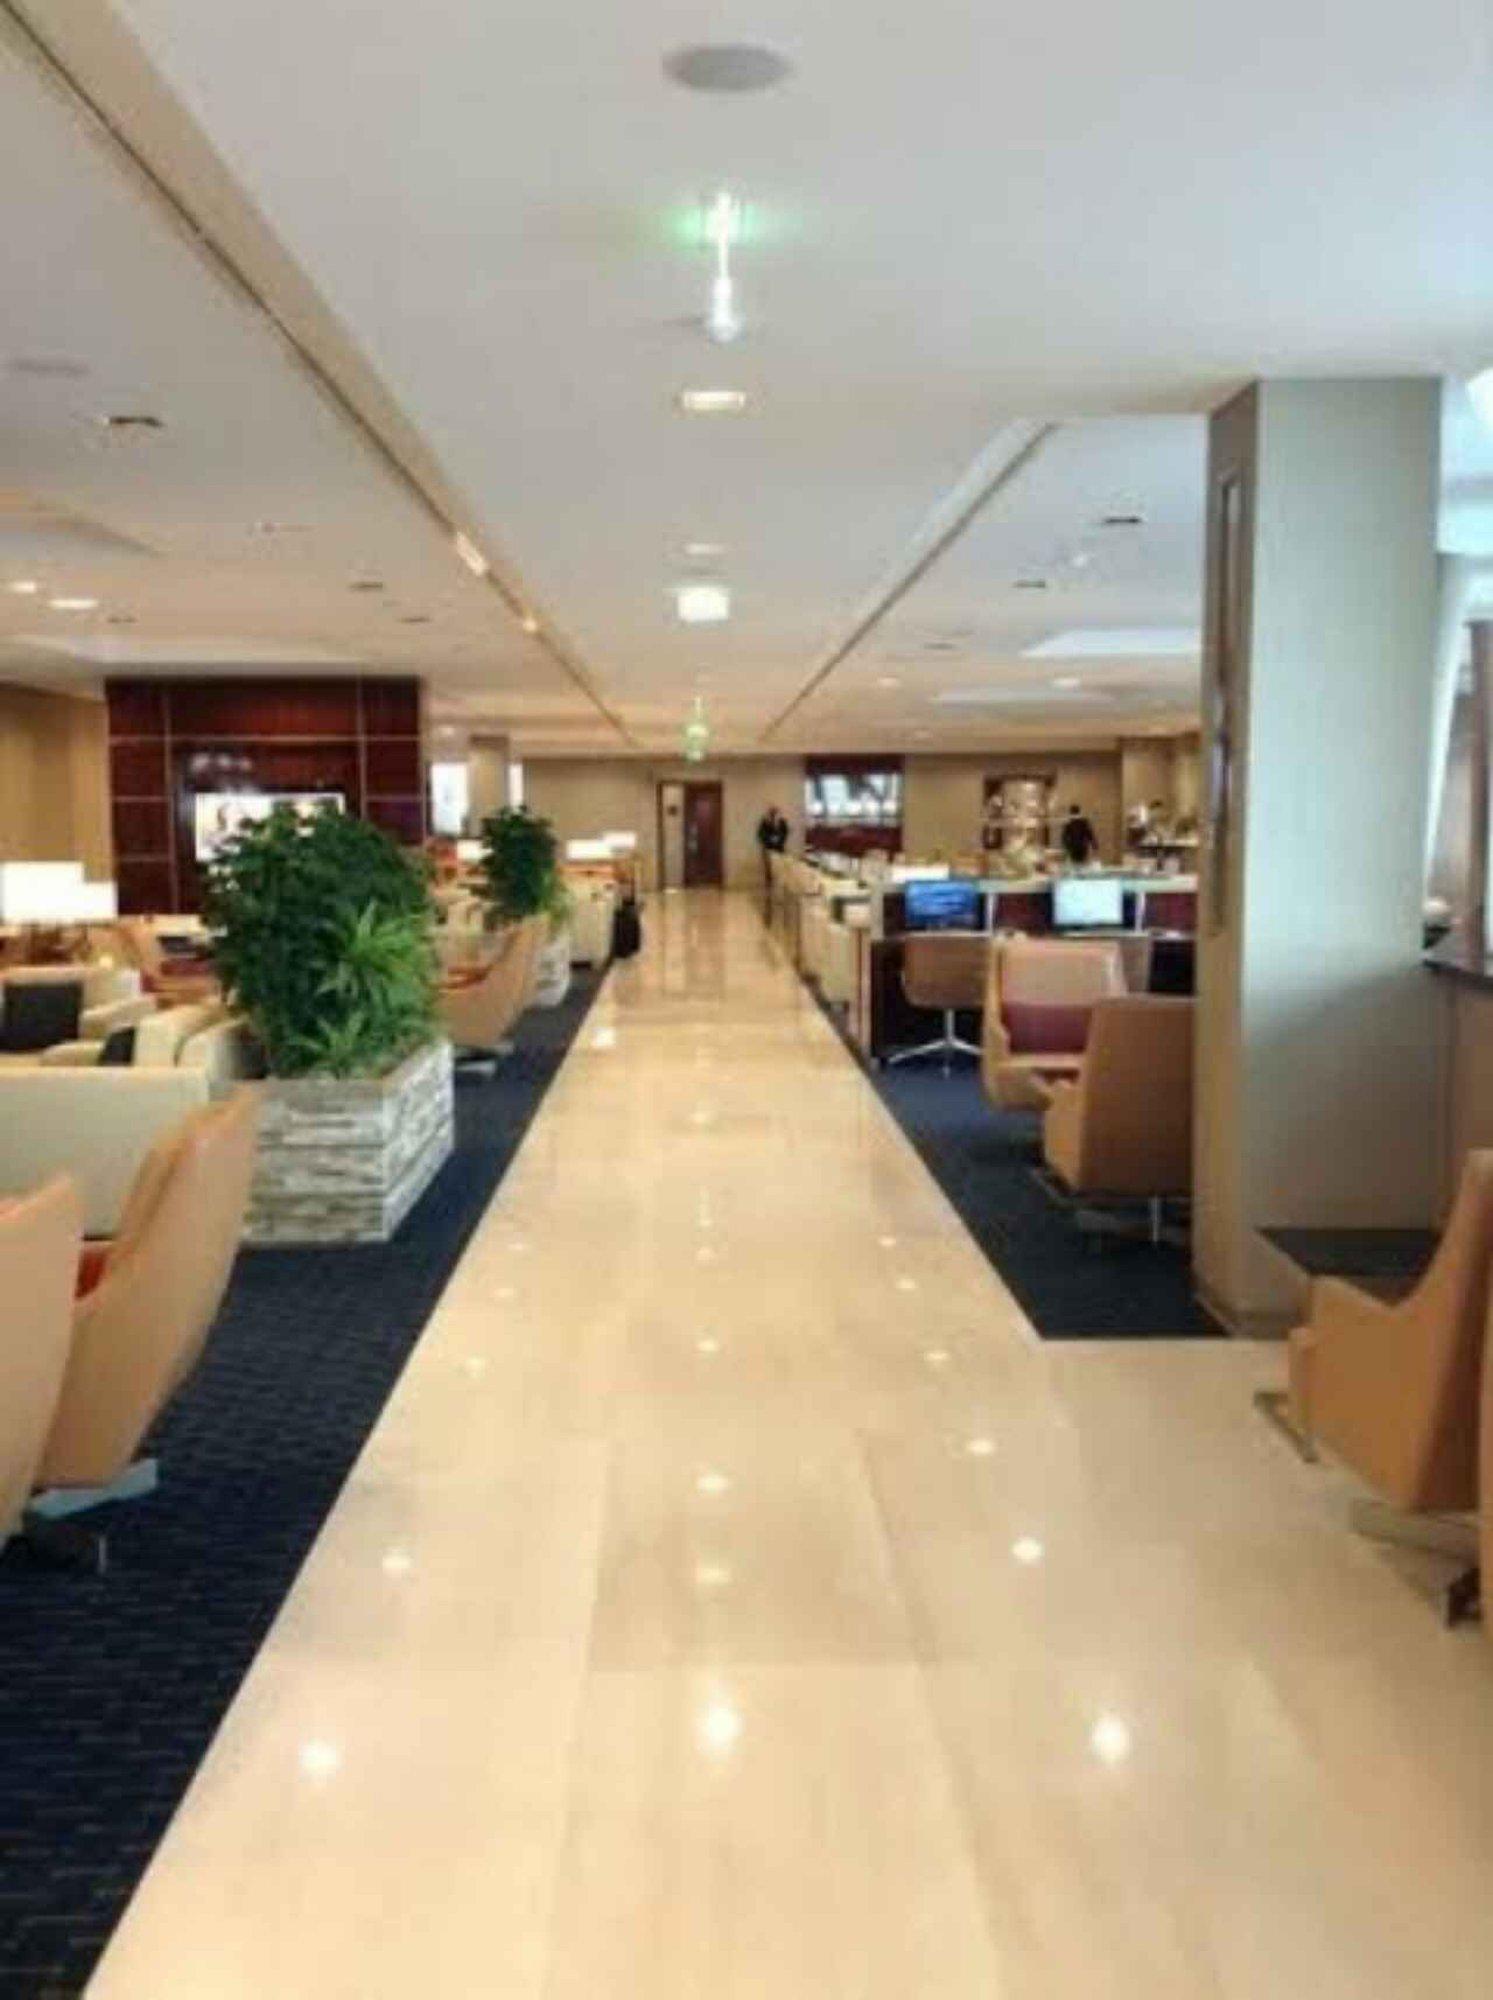 The Emirates Lounge image 4 of 9